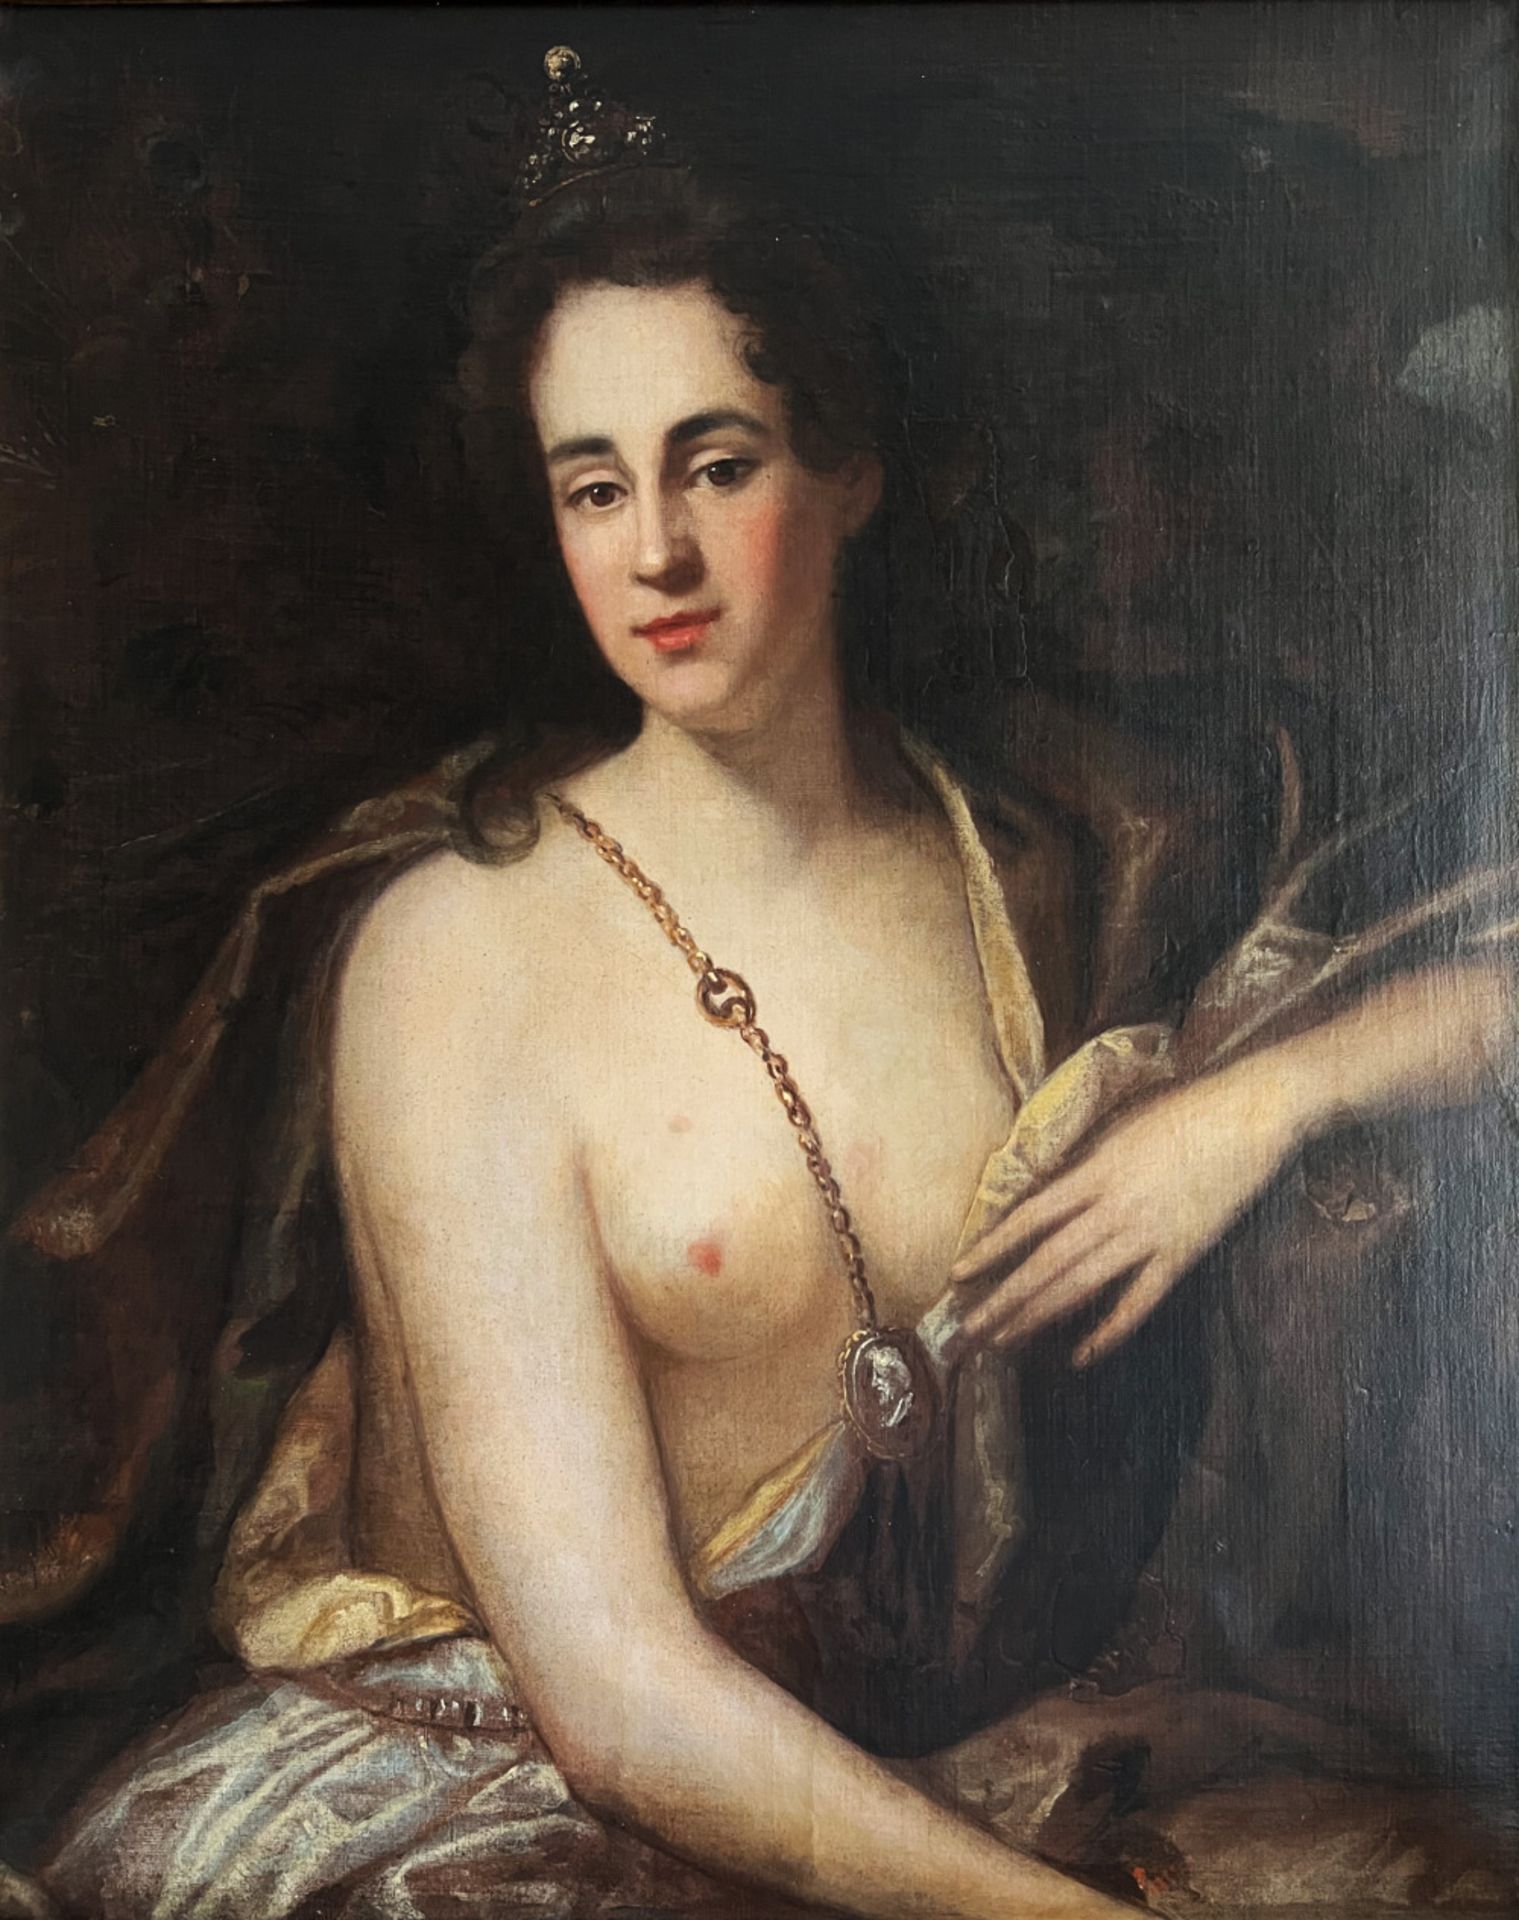 Unbekannter Künstler (18./19. Jh.), Juno halb bekleidet, in der linken oberen Ecke Pfauenfedern,